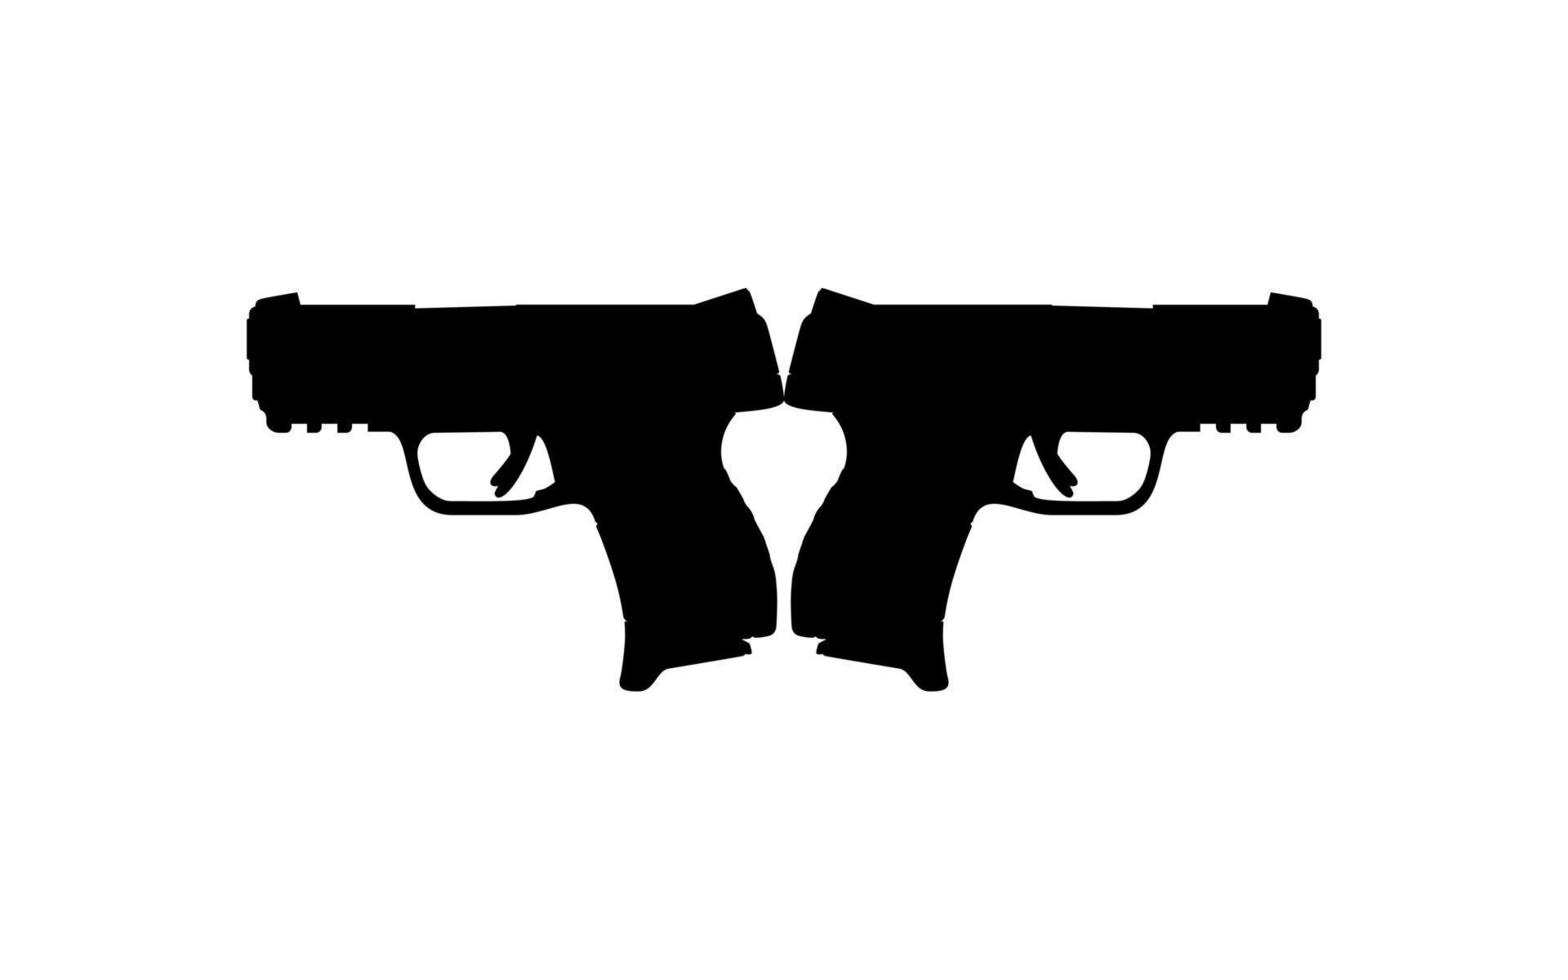 Silhouette of Pistol Gun for Logo, Pictogram, Art Illustration, Website or Graphic Design Element. Vector Illustration